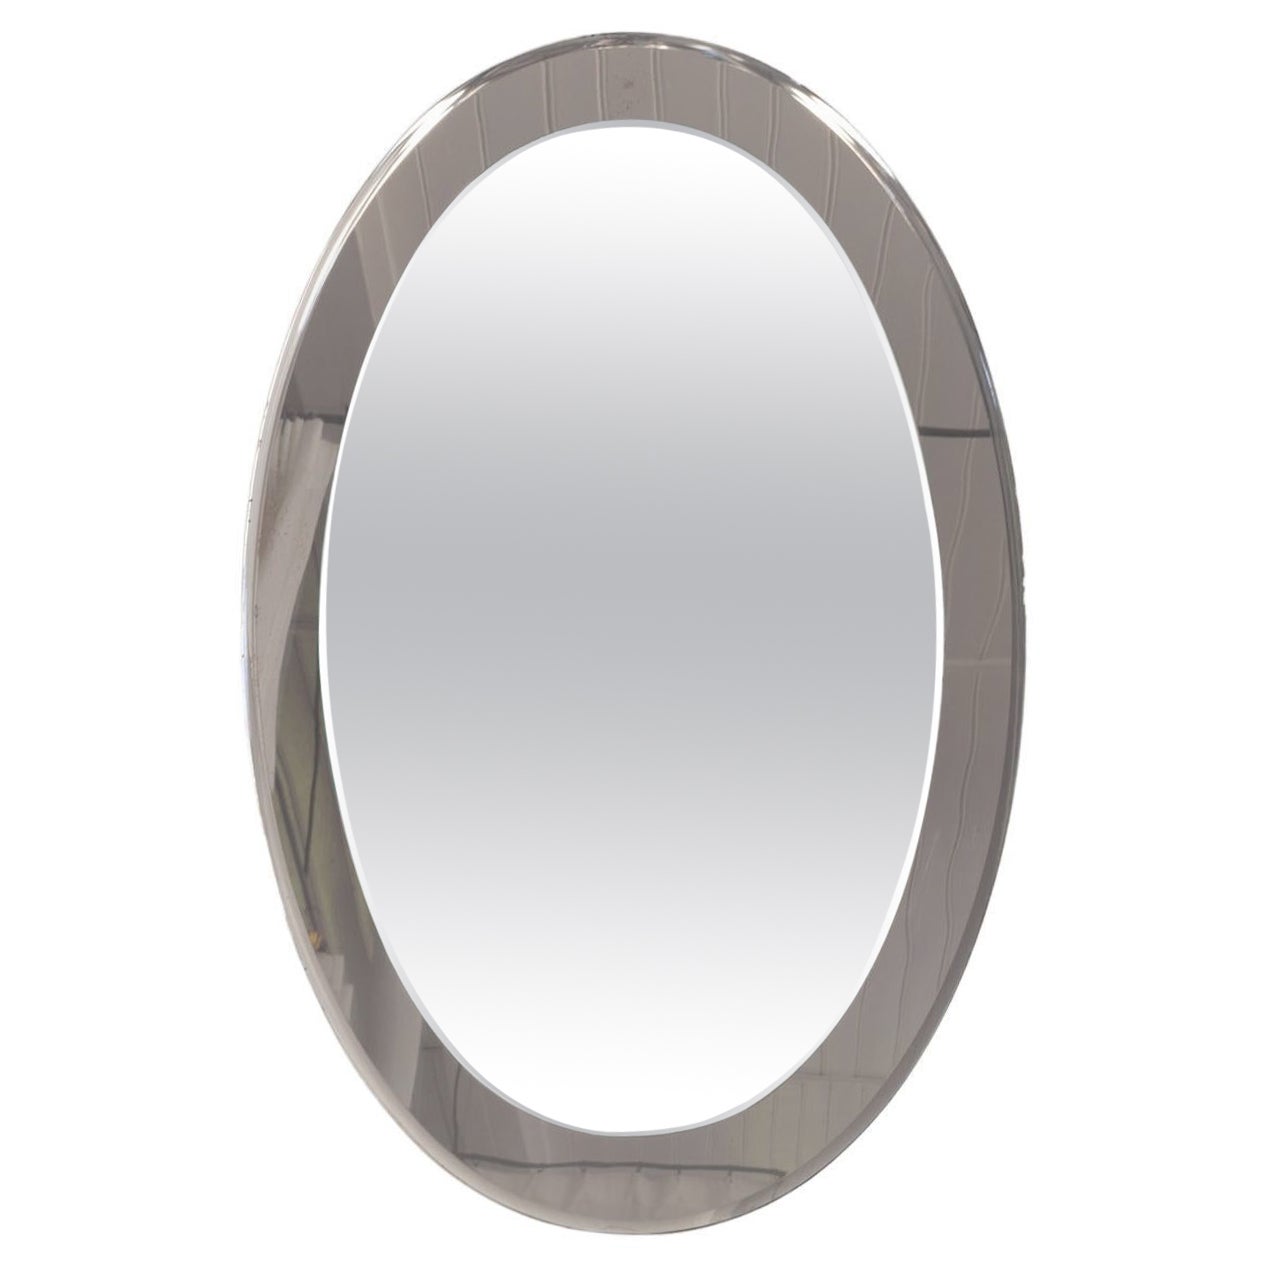 Oval Italian Twotone Mirror, Design: Antonio Lupi by Cristal Luxor, 1960s